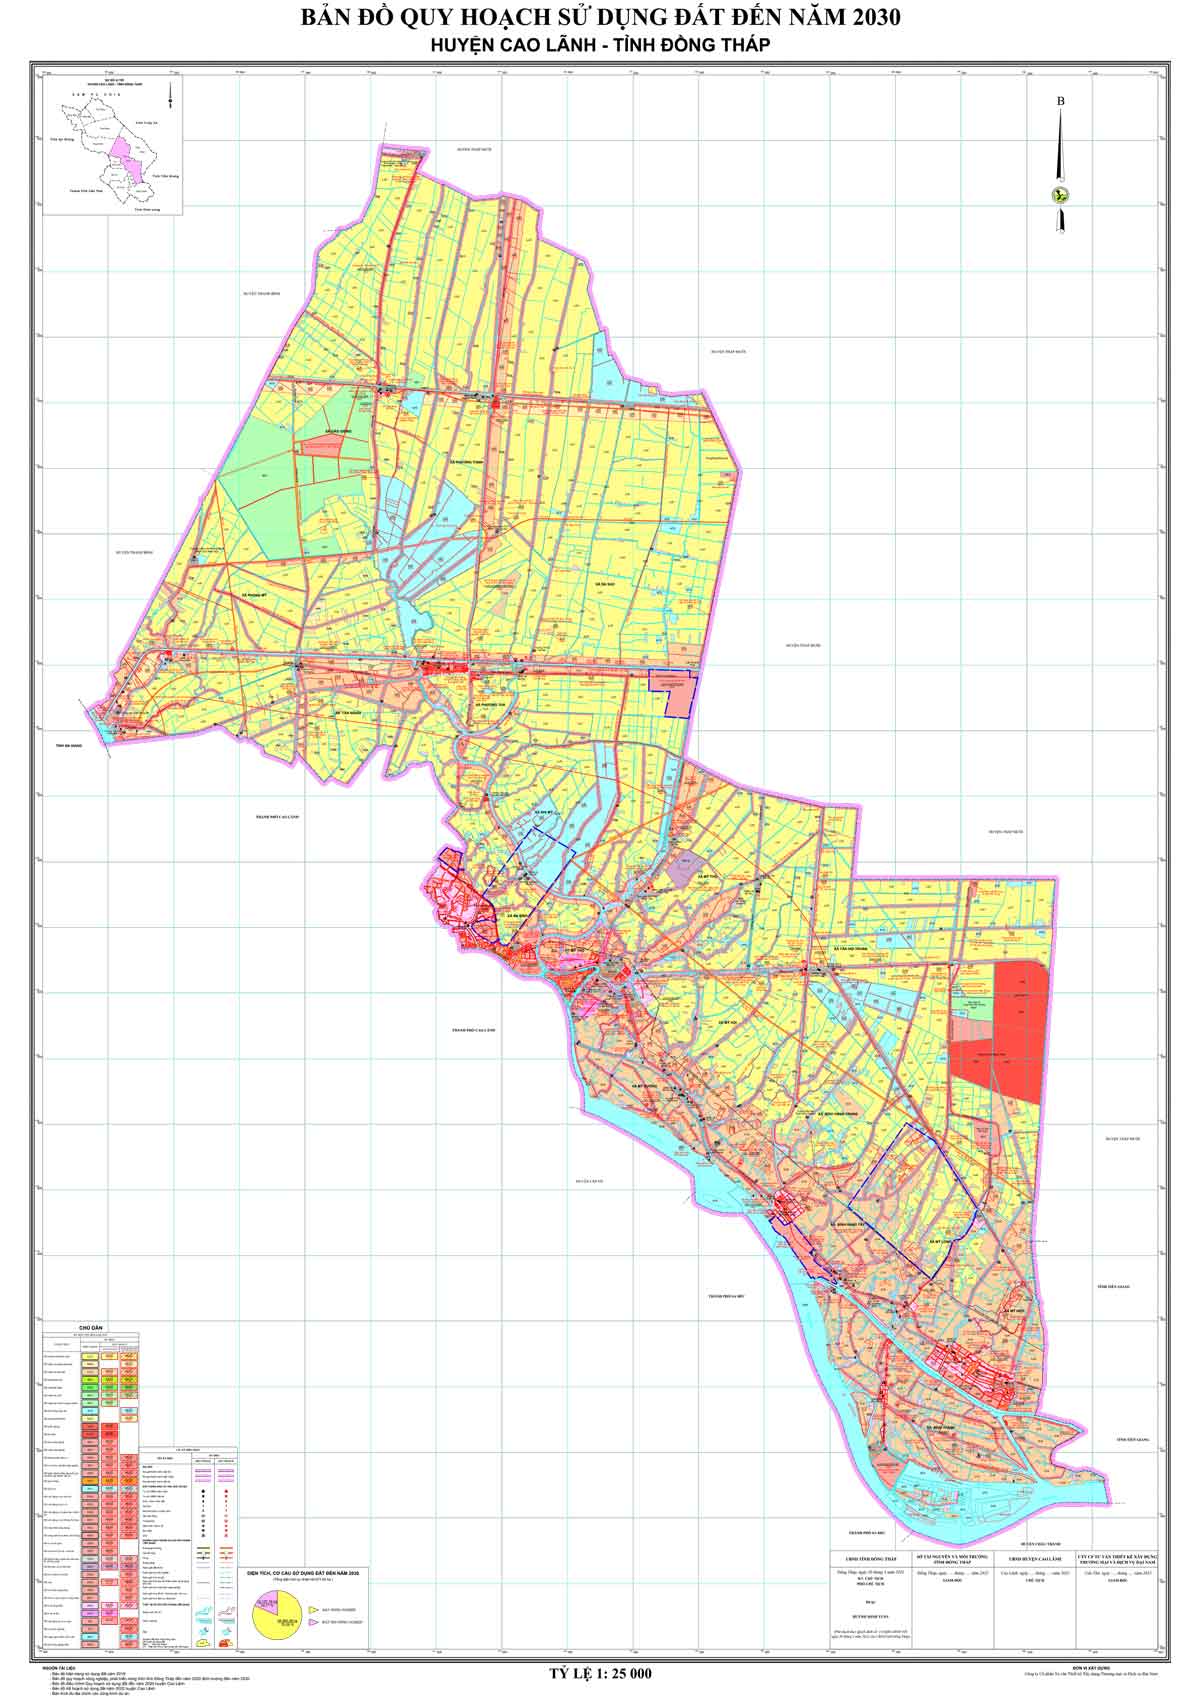 Bản đồ QHSDĐ huyện Cao Lãnh đến năm 2030